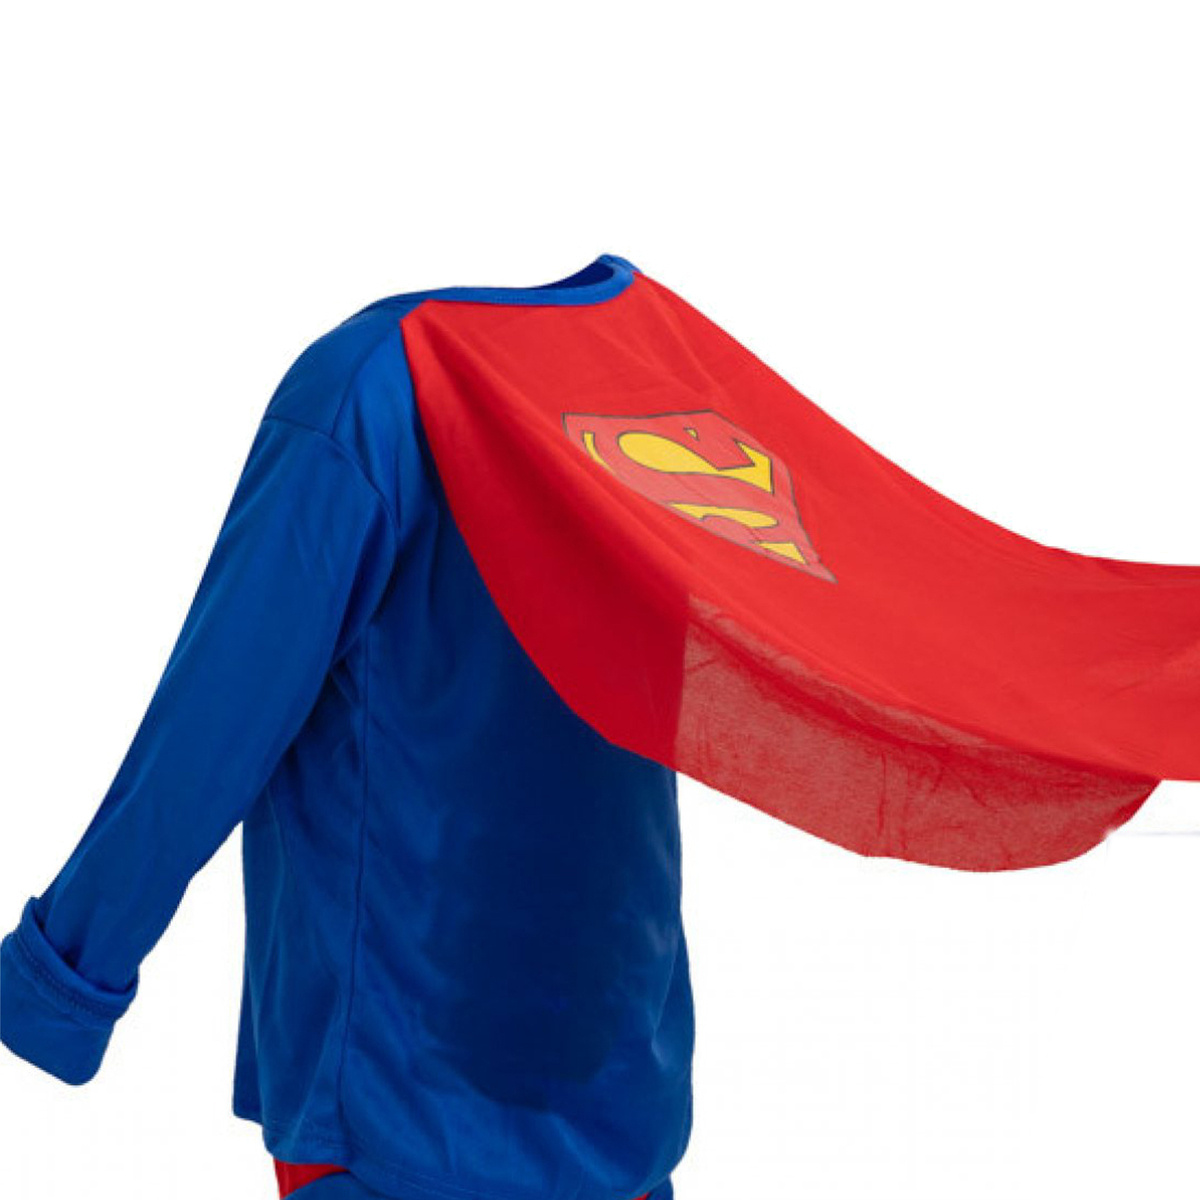 Strój Dla Chłopca Kostium Superman 98-110